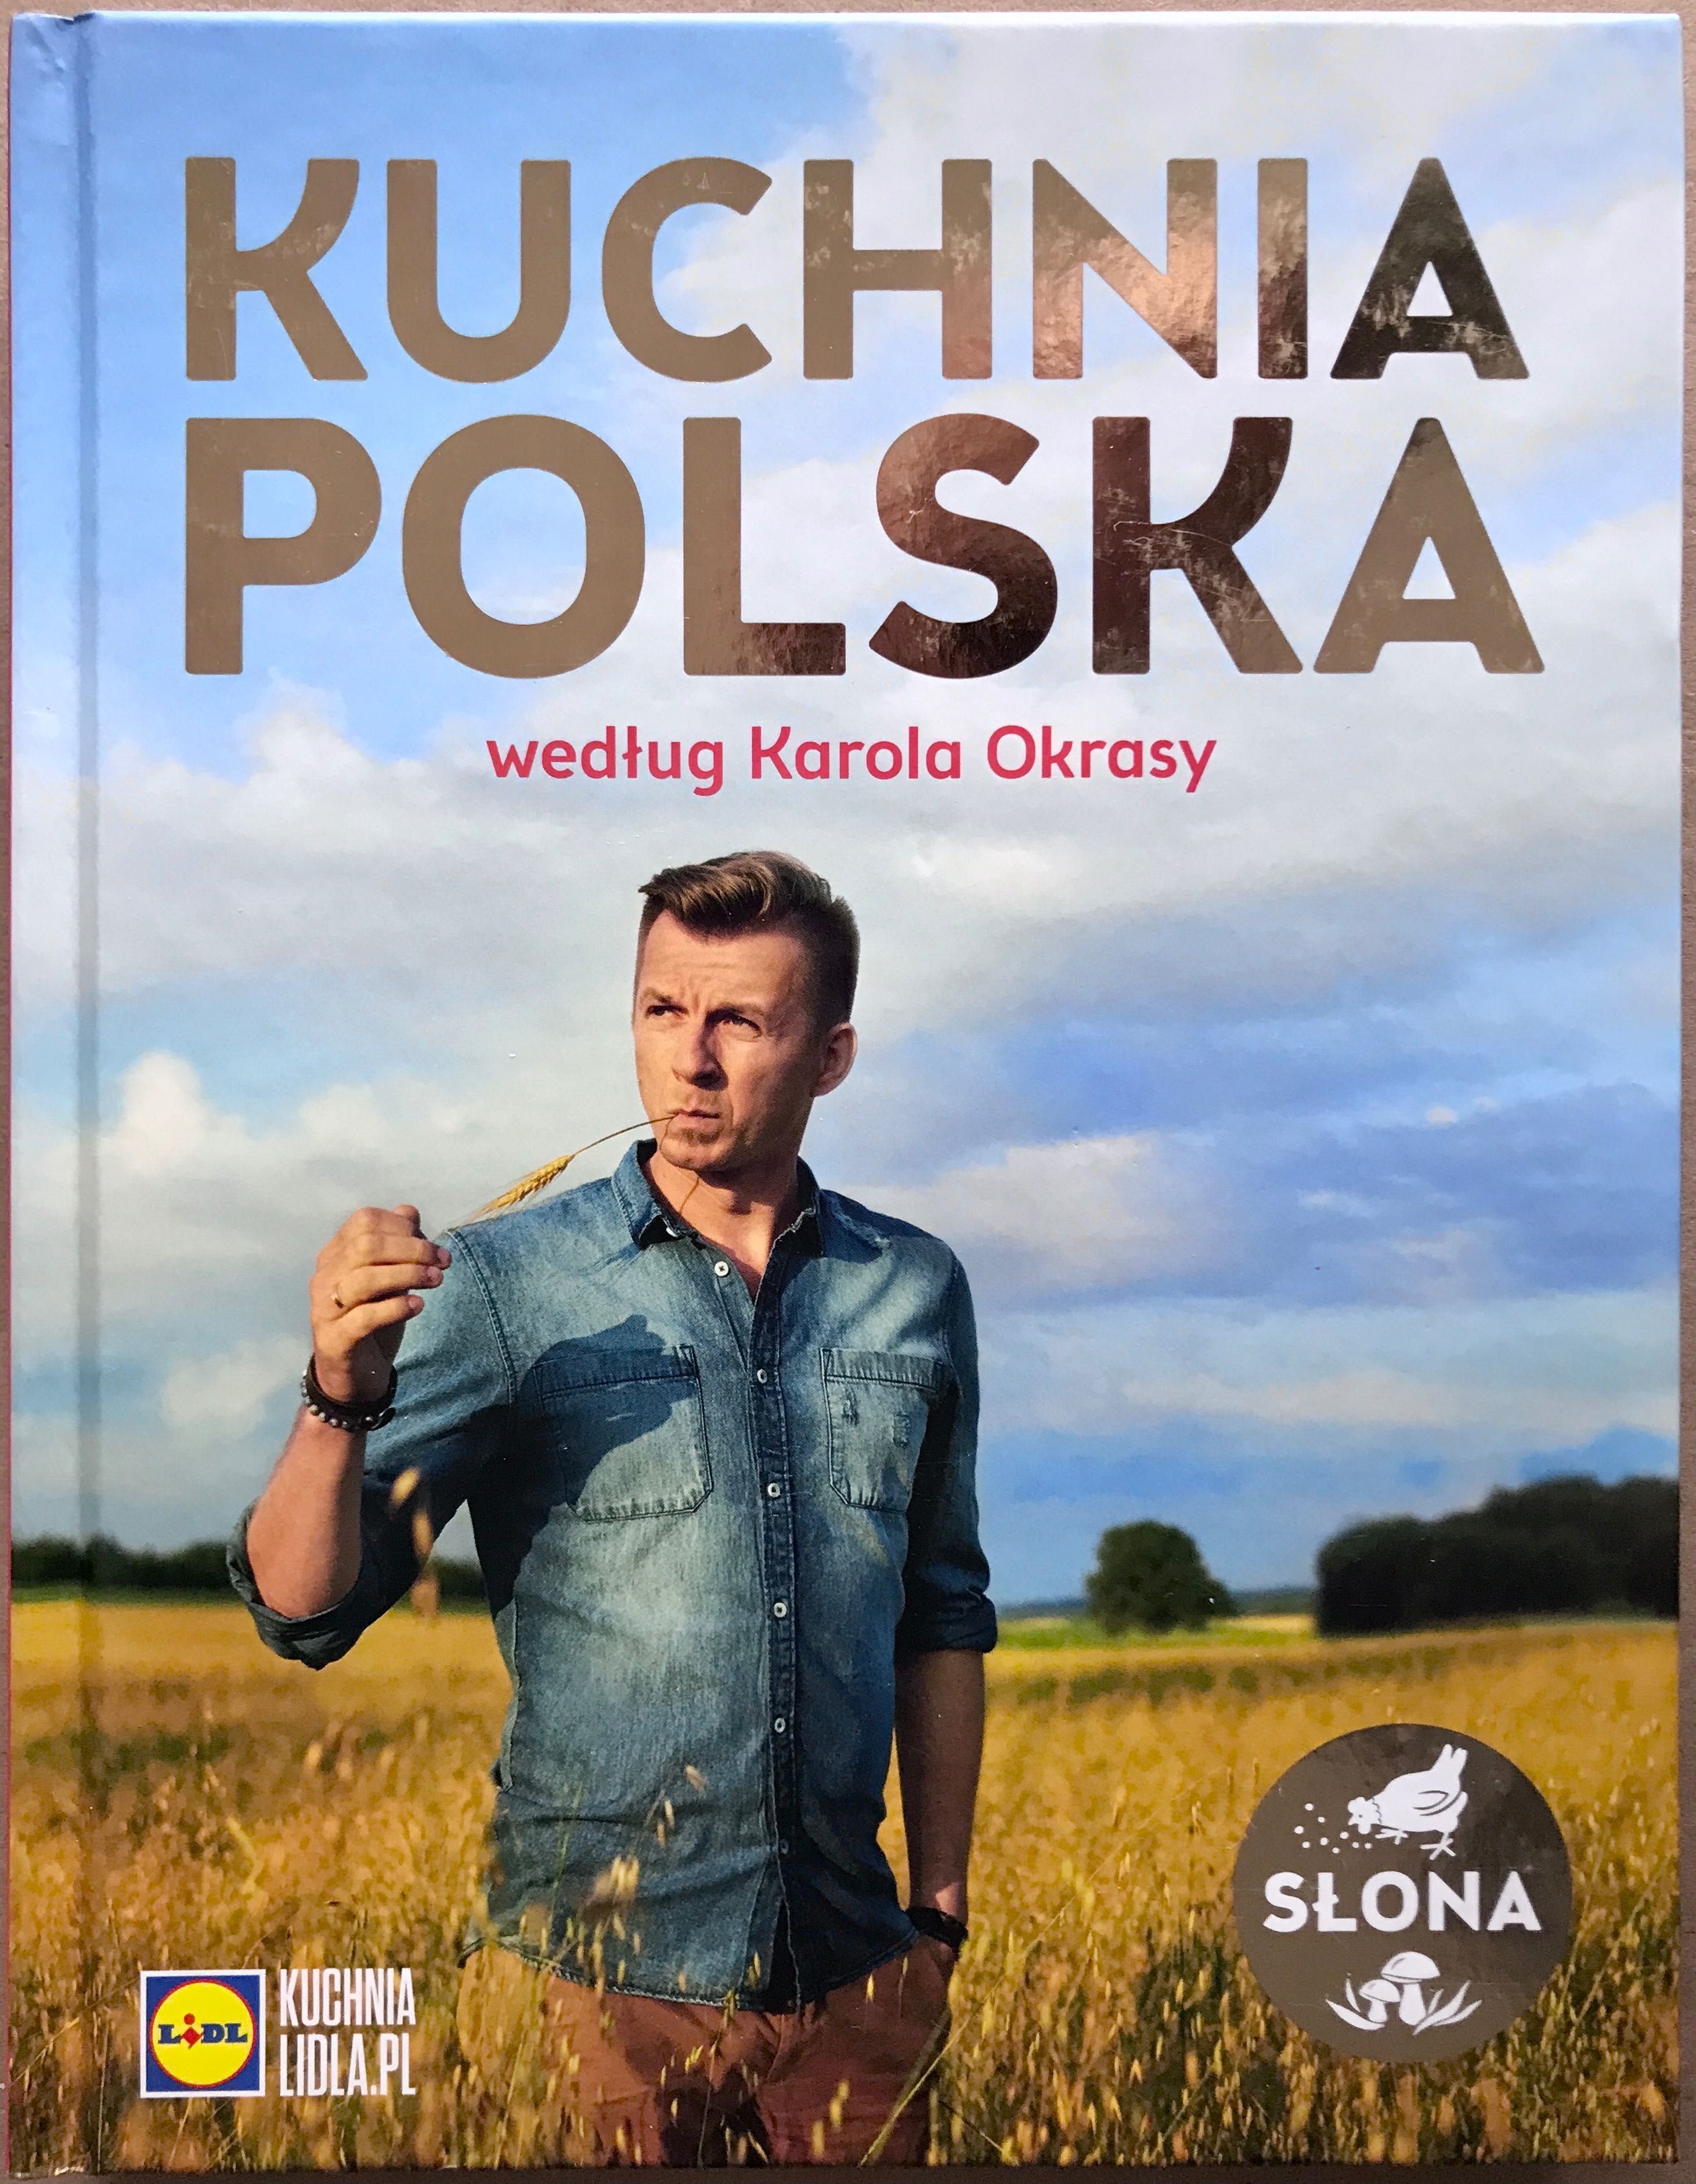 Kuchnia Polska wg Karola Okrasy. Słona